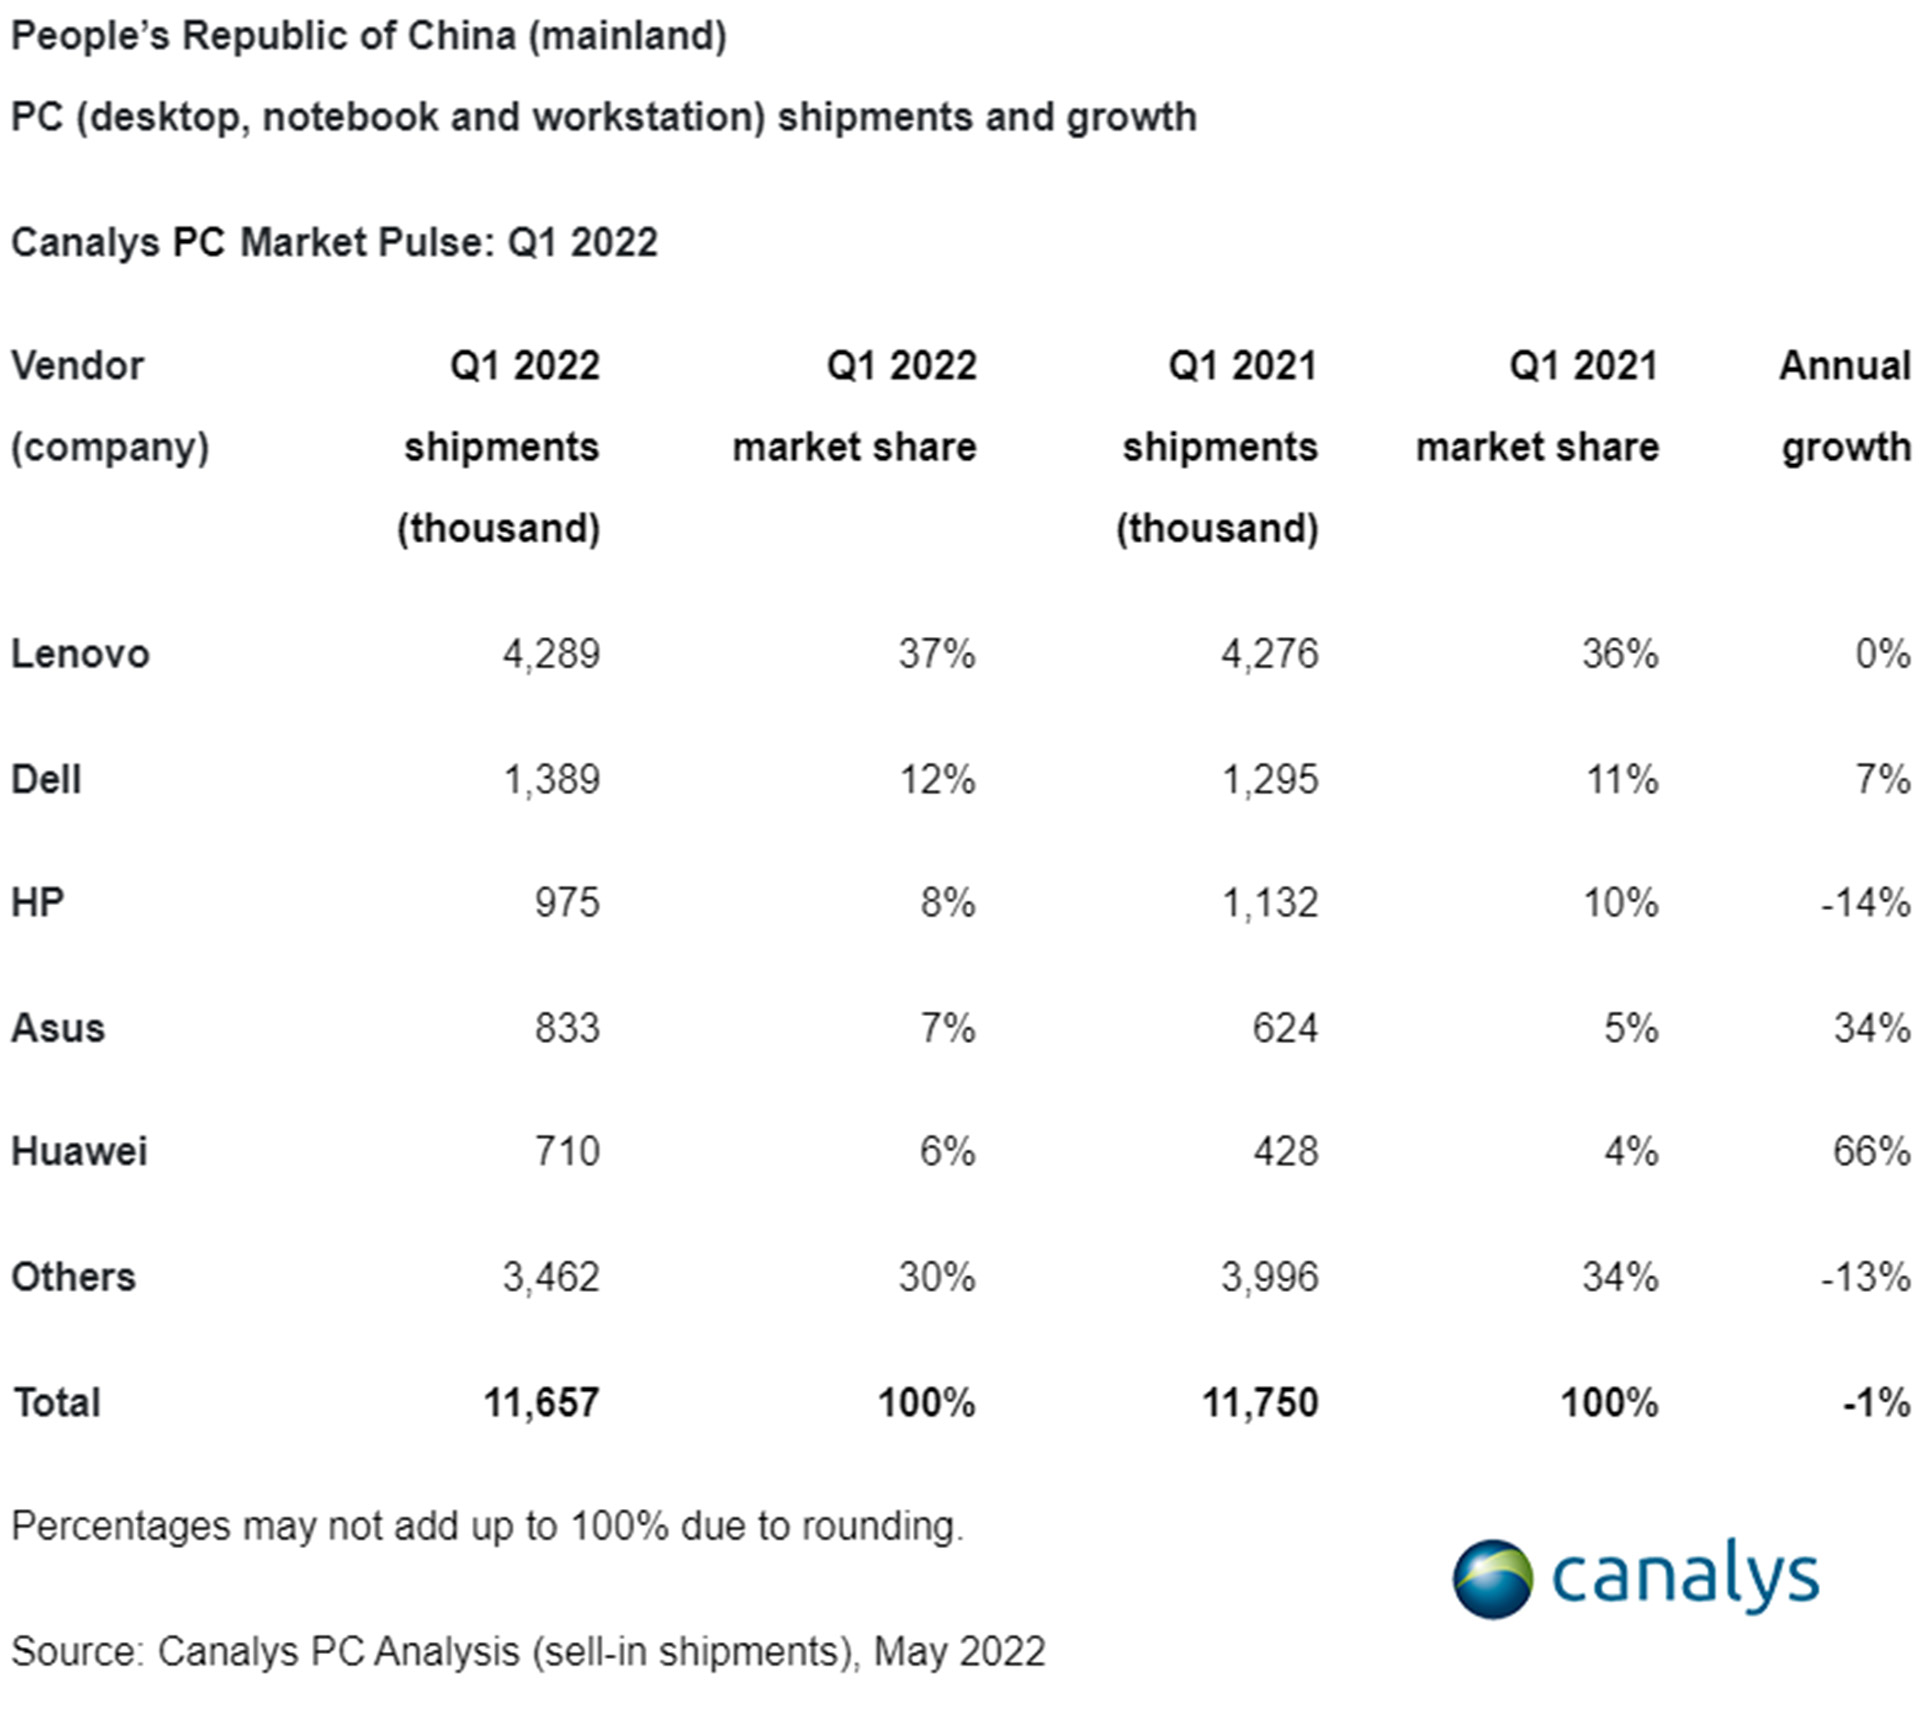 سهم بازار شرکت های مختلف توسط Canalys در سه ماهه اول سال 2022 در چین گزارش شده است